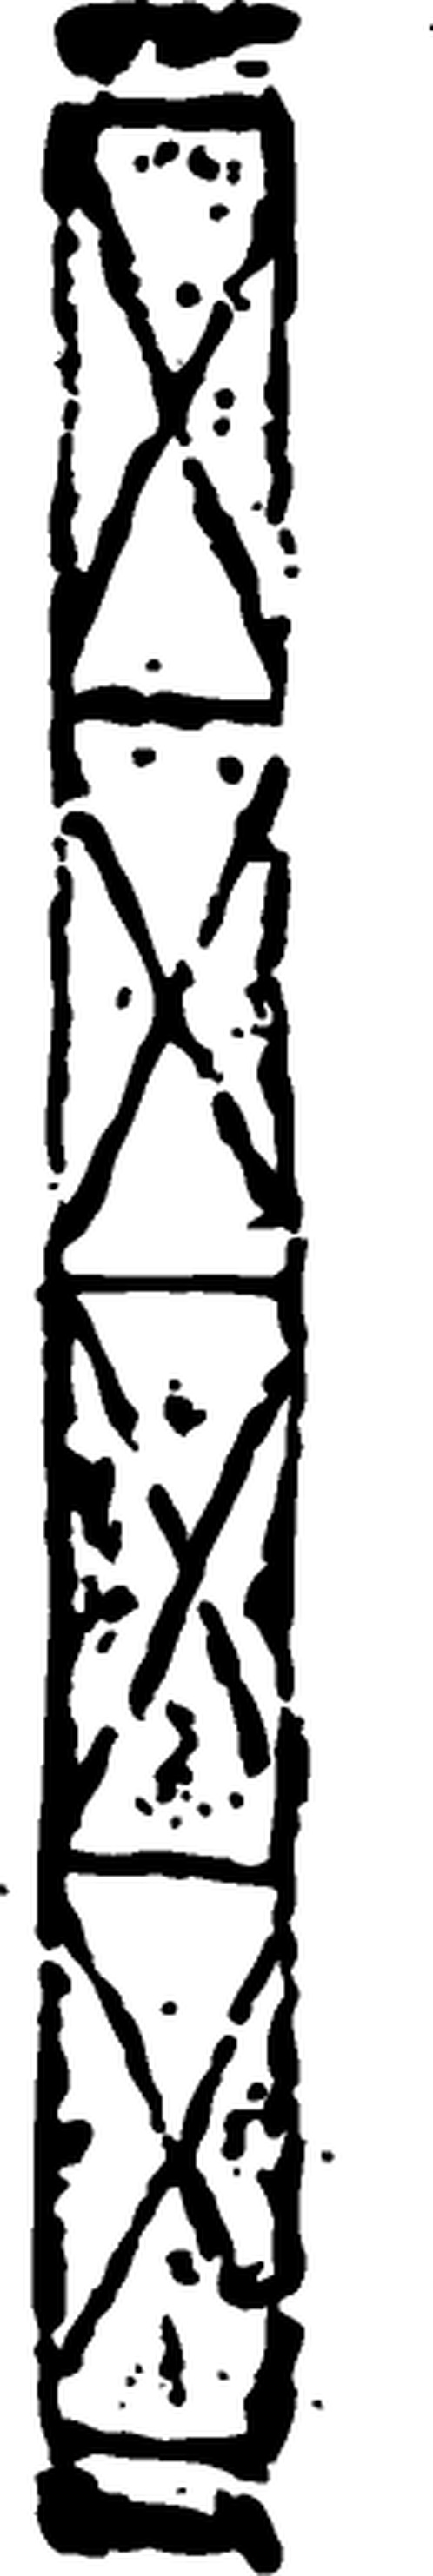 西晋时期陶器与花纹砖图案507604 (128x762px 299)